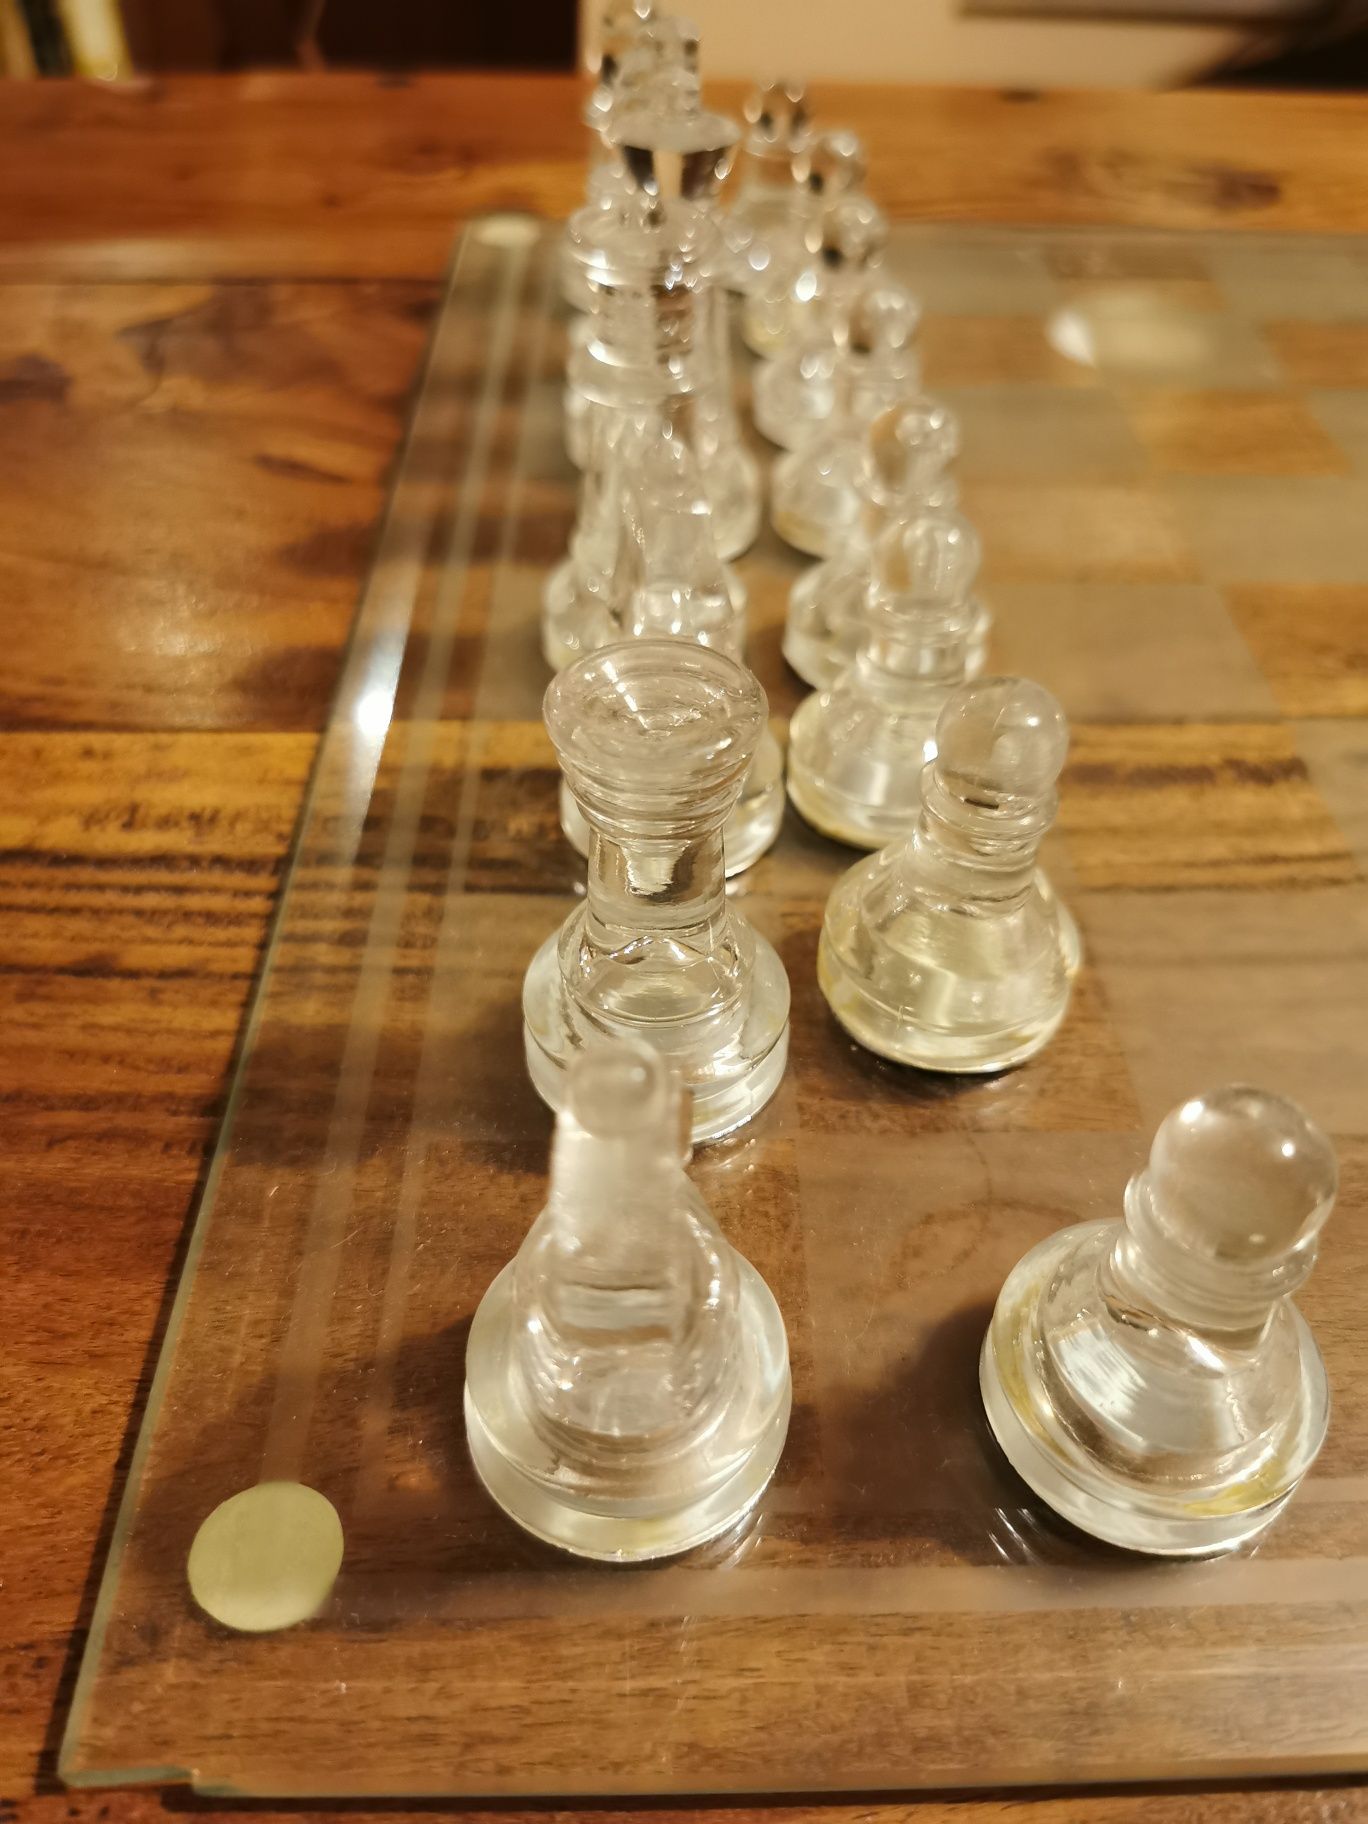 Jogo de xadrez em vidro